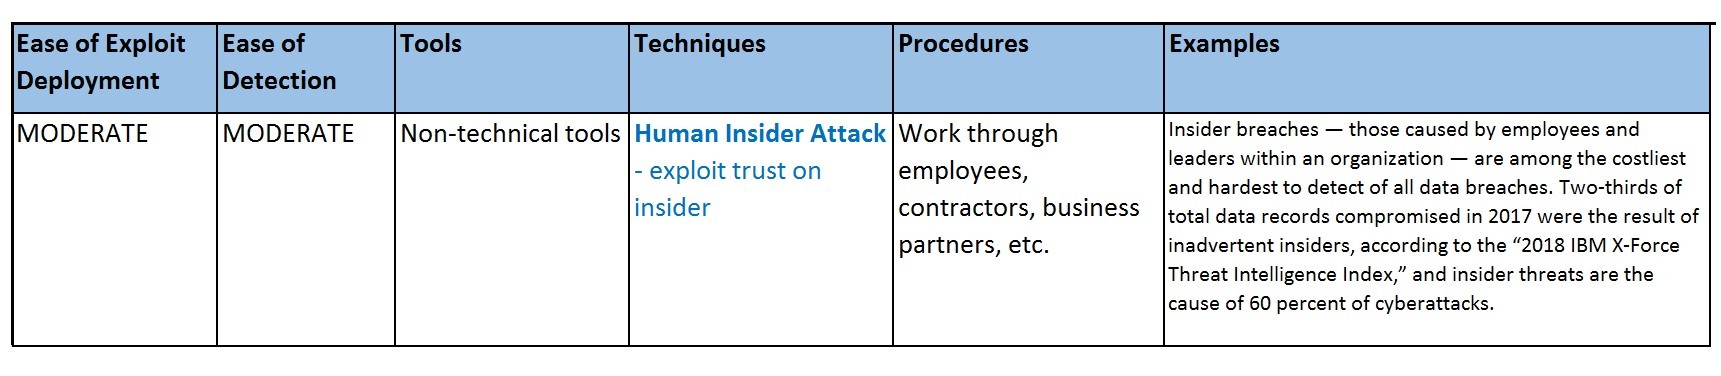 Insider Attack - Exploit trust on insider